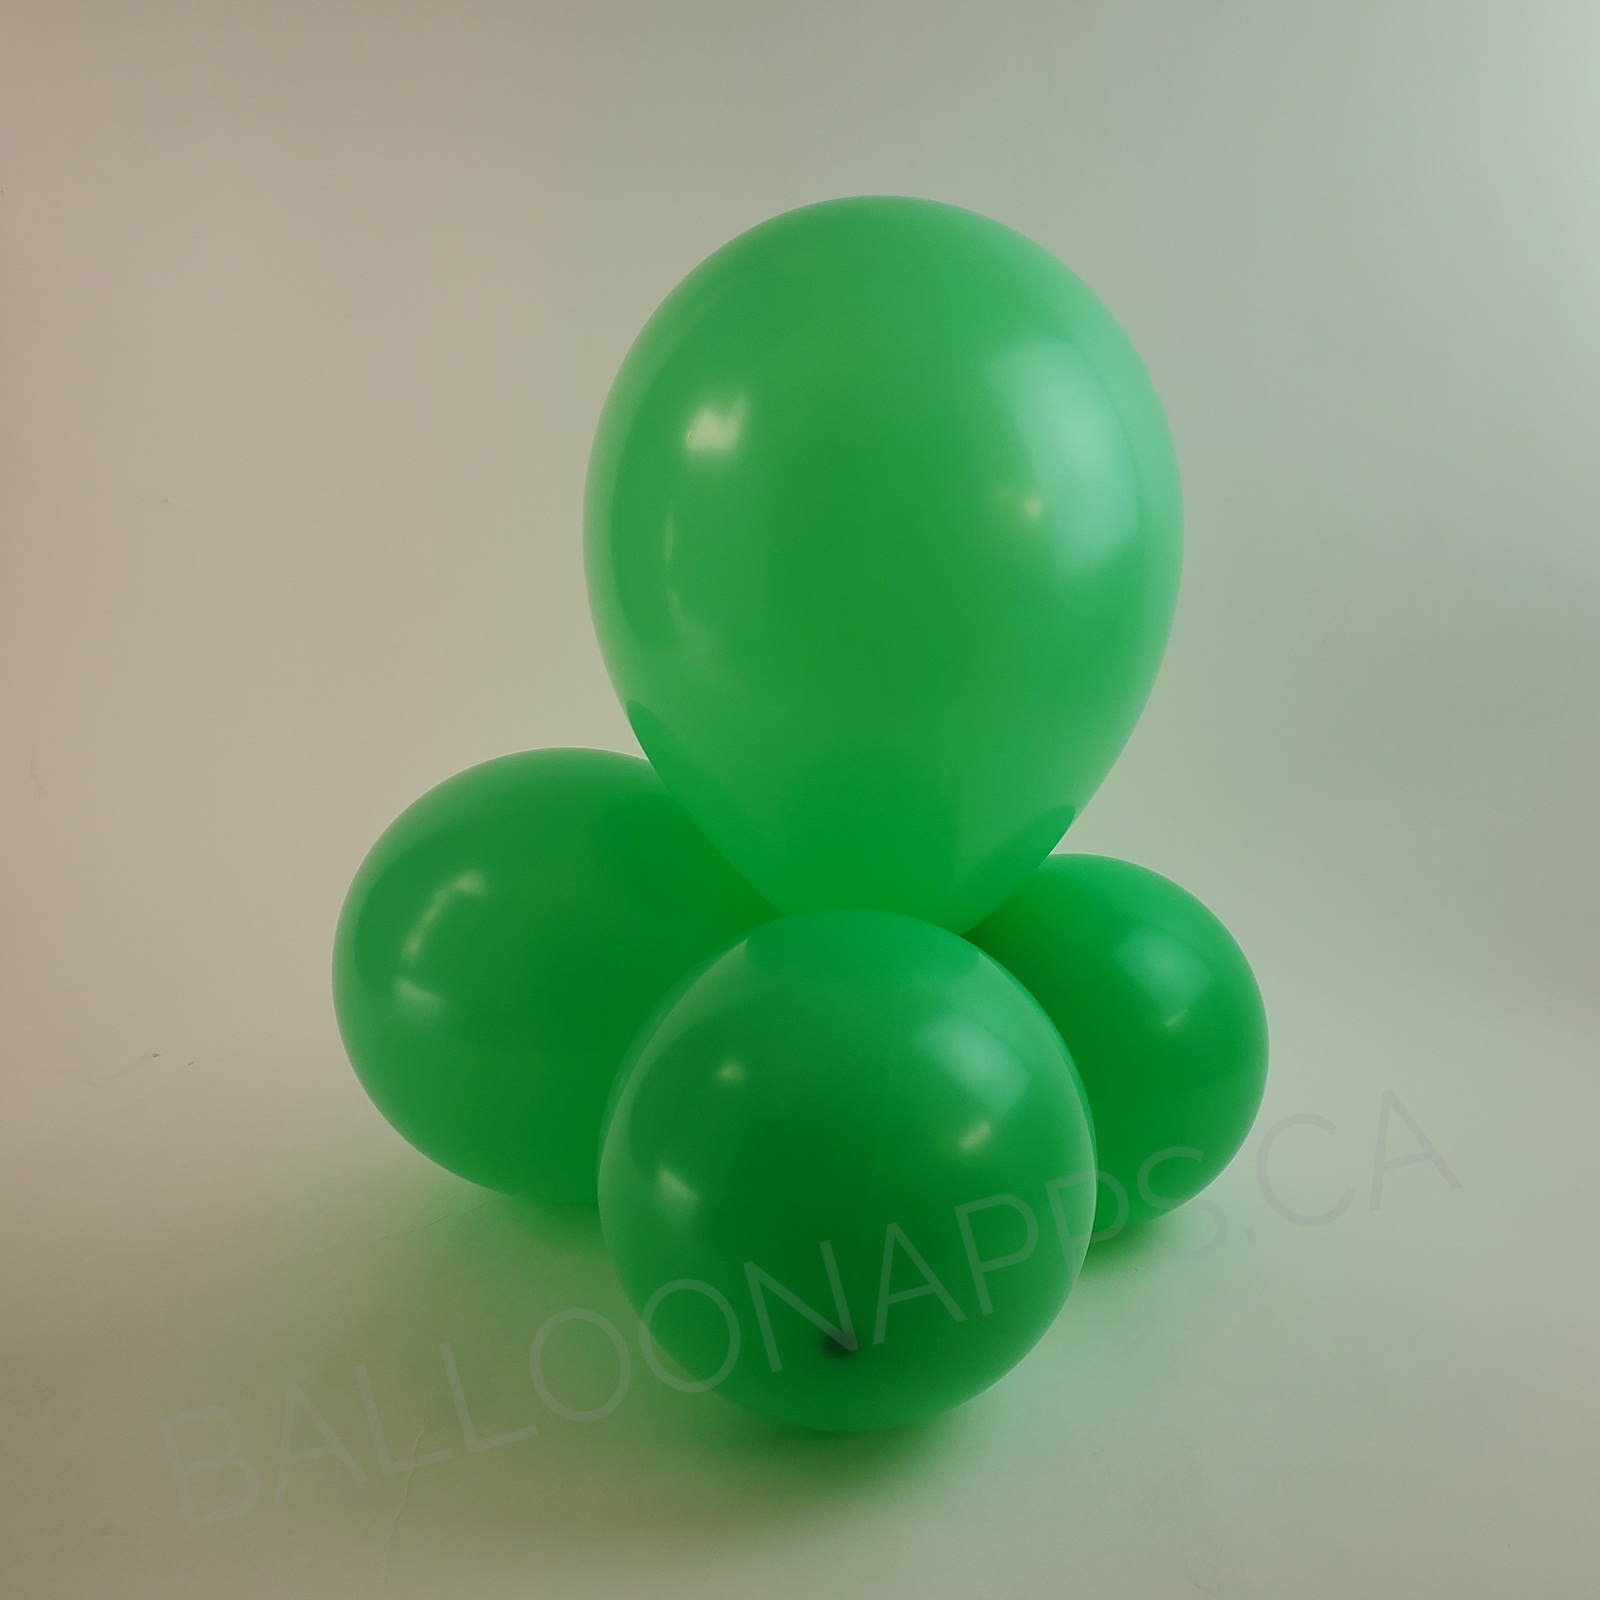 balloon texture BET (25) 18